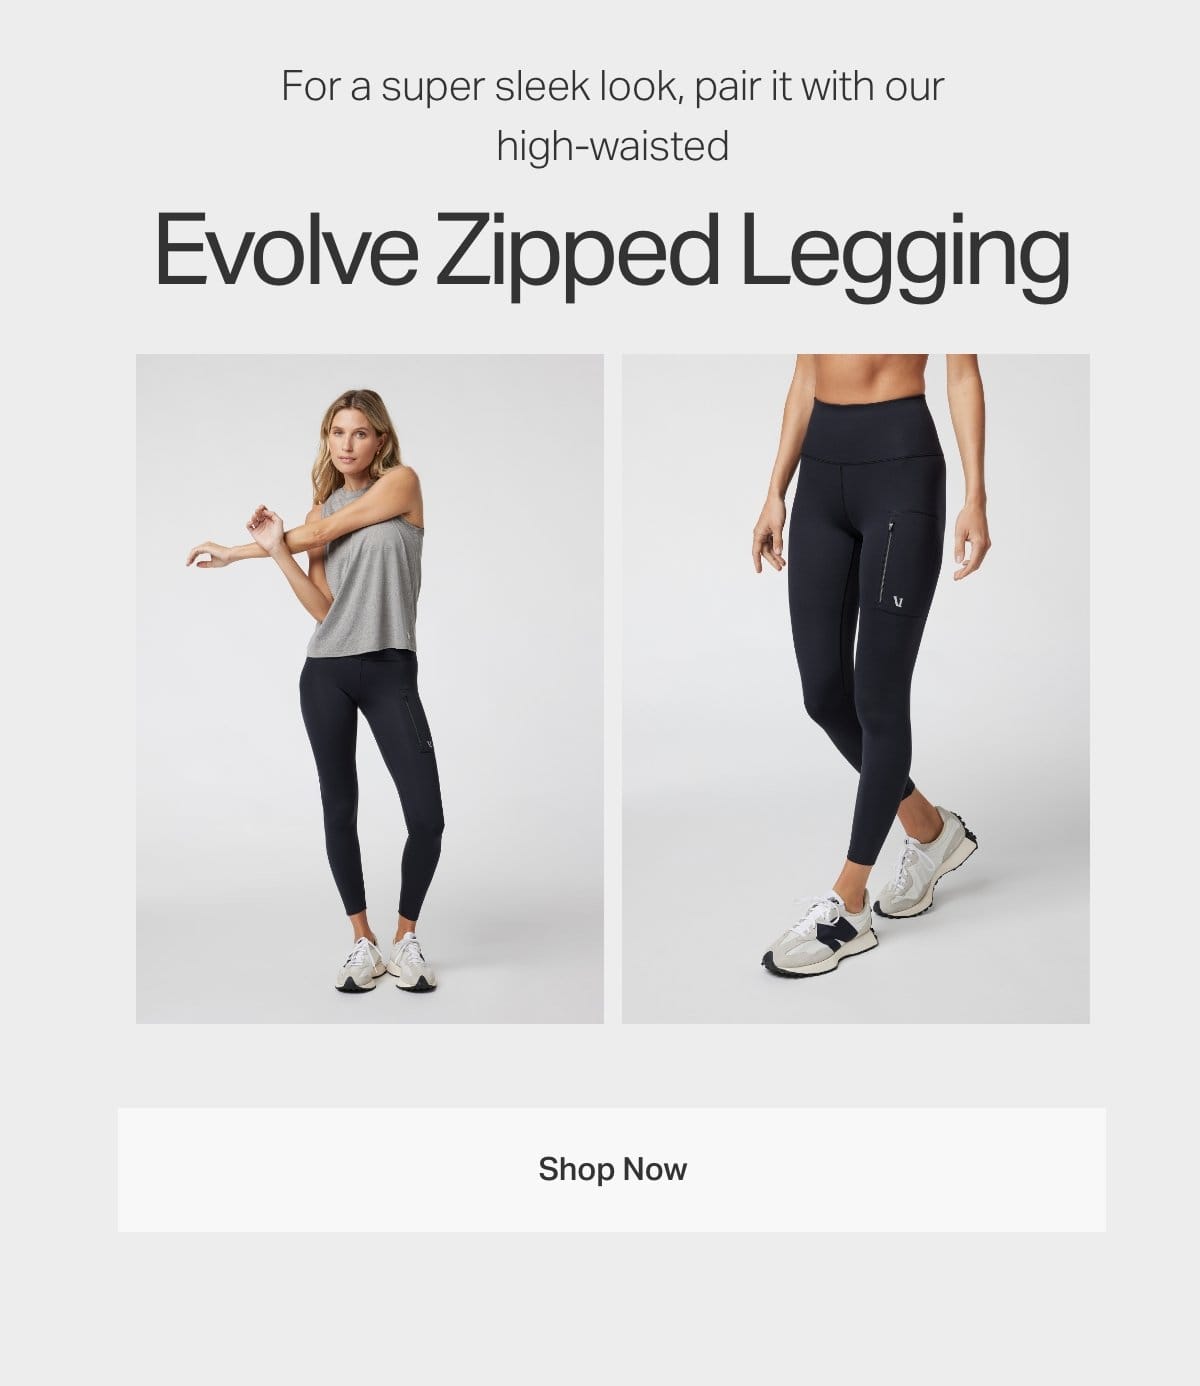 Evolve Zipped Legging